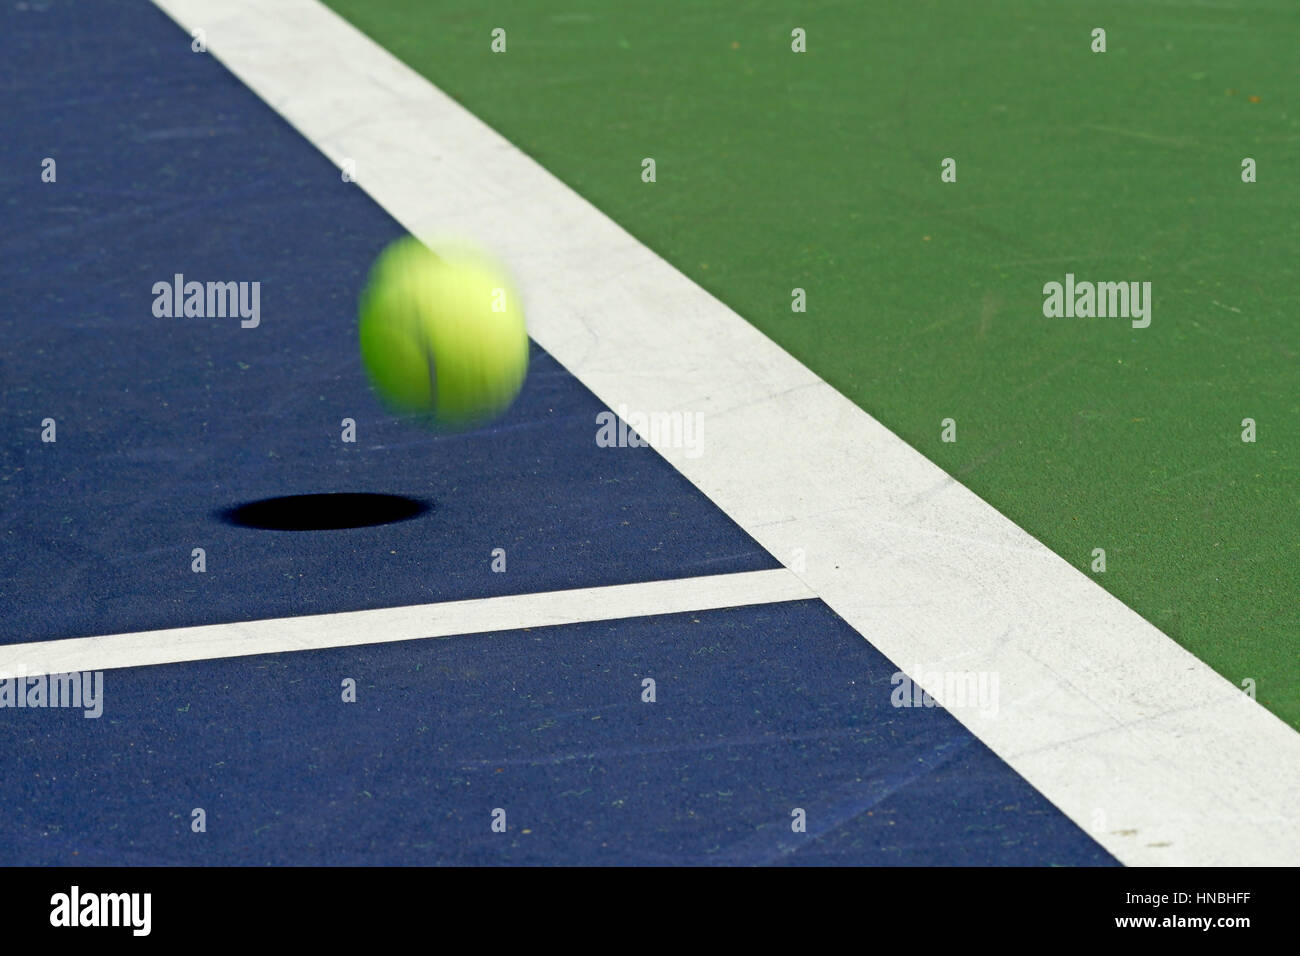 Déménagement balle de tennis à l'angle de la cour Banque D'Images